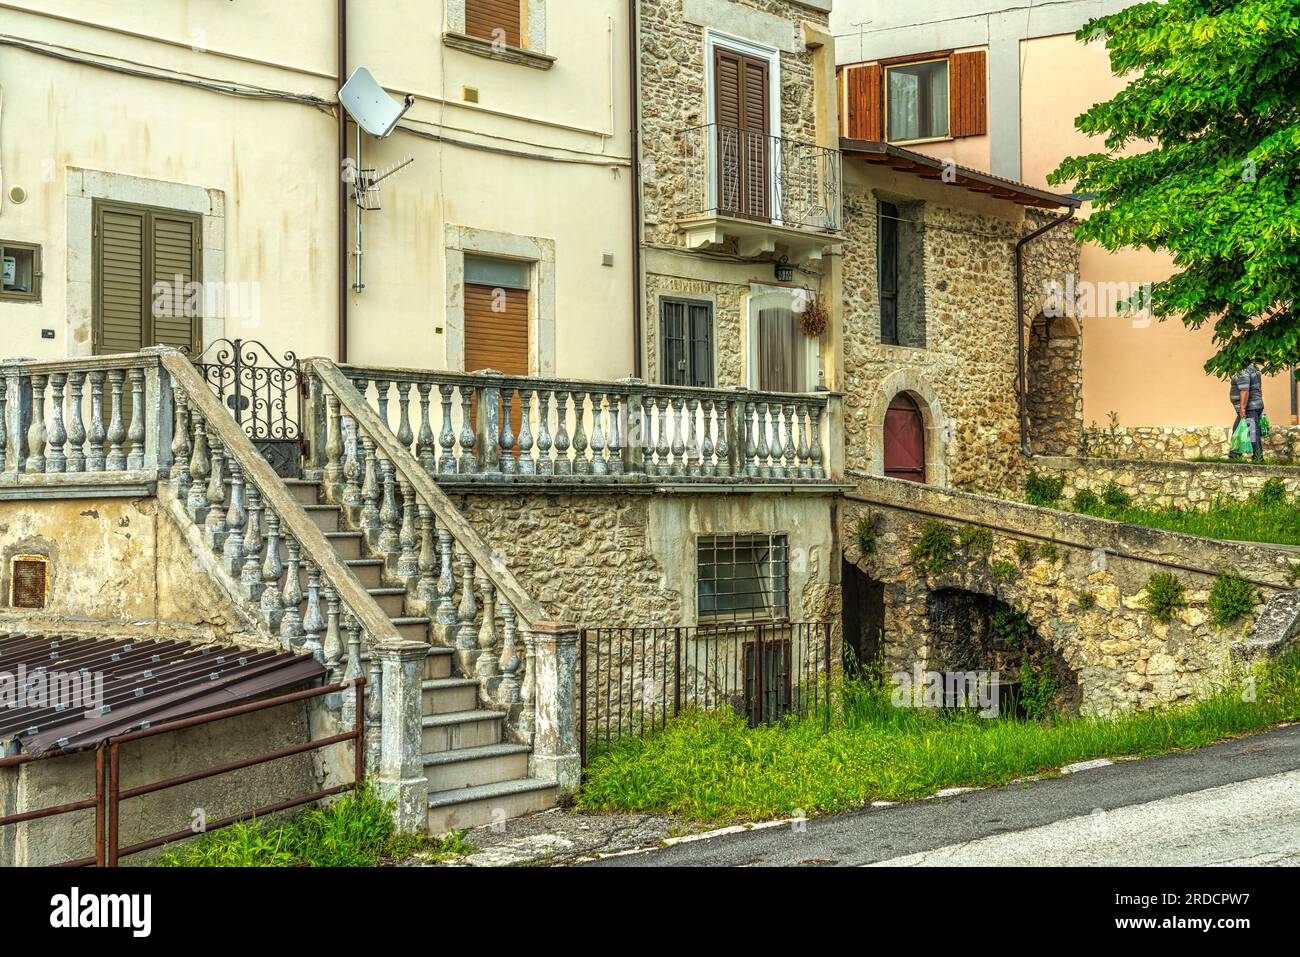 Werfen Sie einen Blick auf die Häuser in der mittelalterlichen Stadt Goriano Sicoli. Goriano Sicoli, Provinz L'Aquila, Abruzzen, Italien, Europa Stockfoto